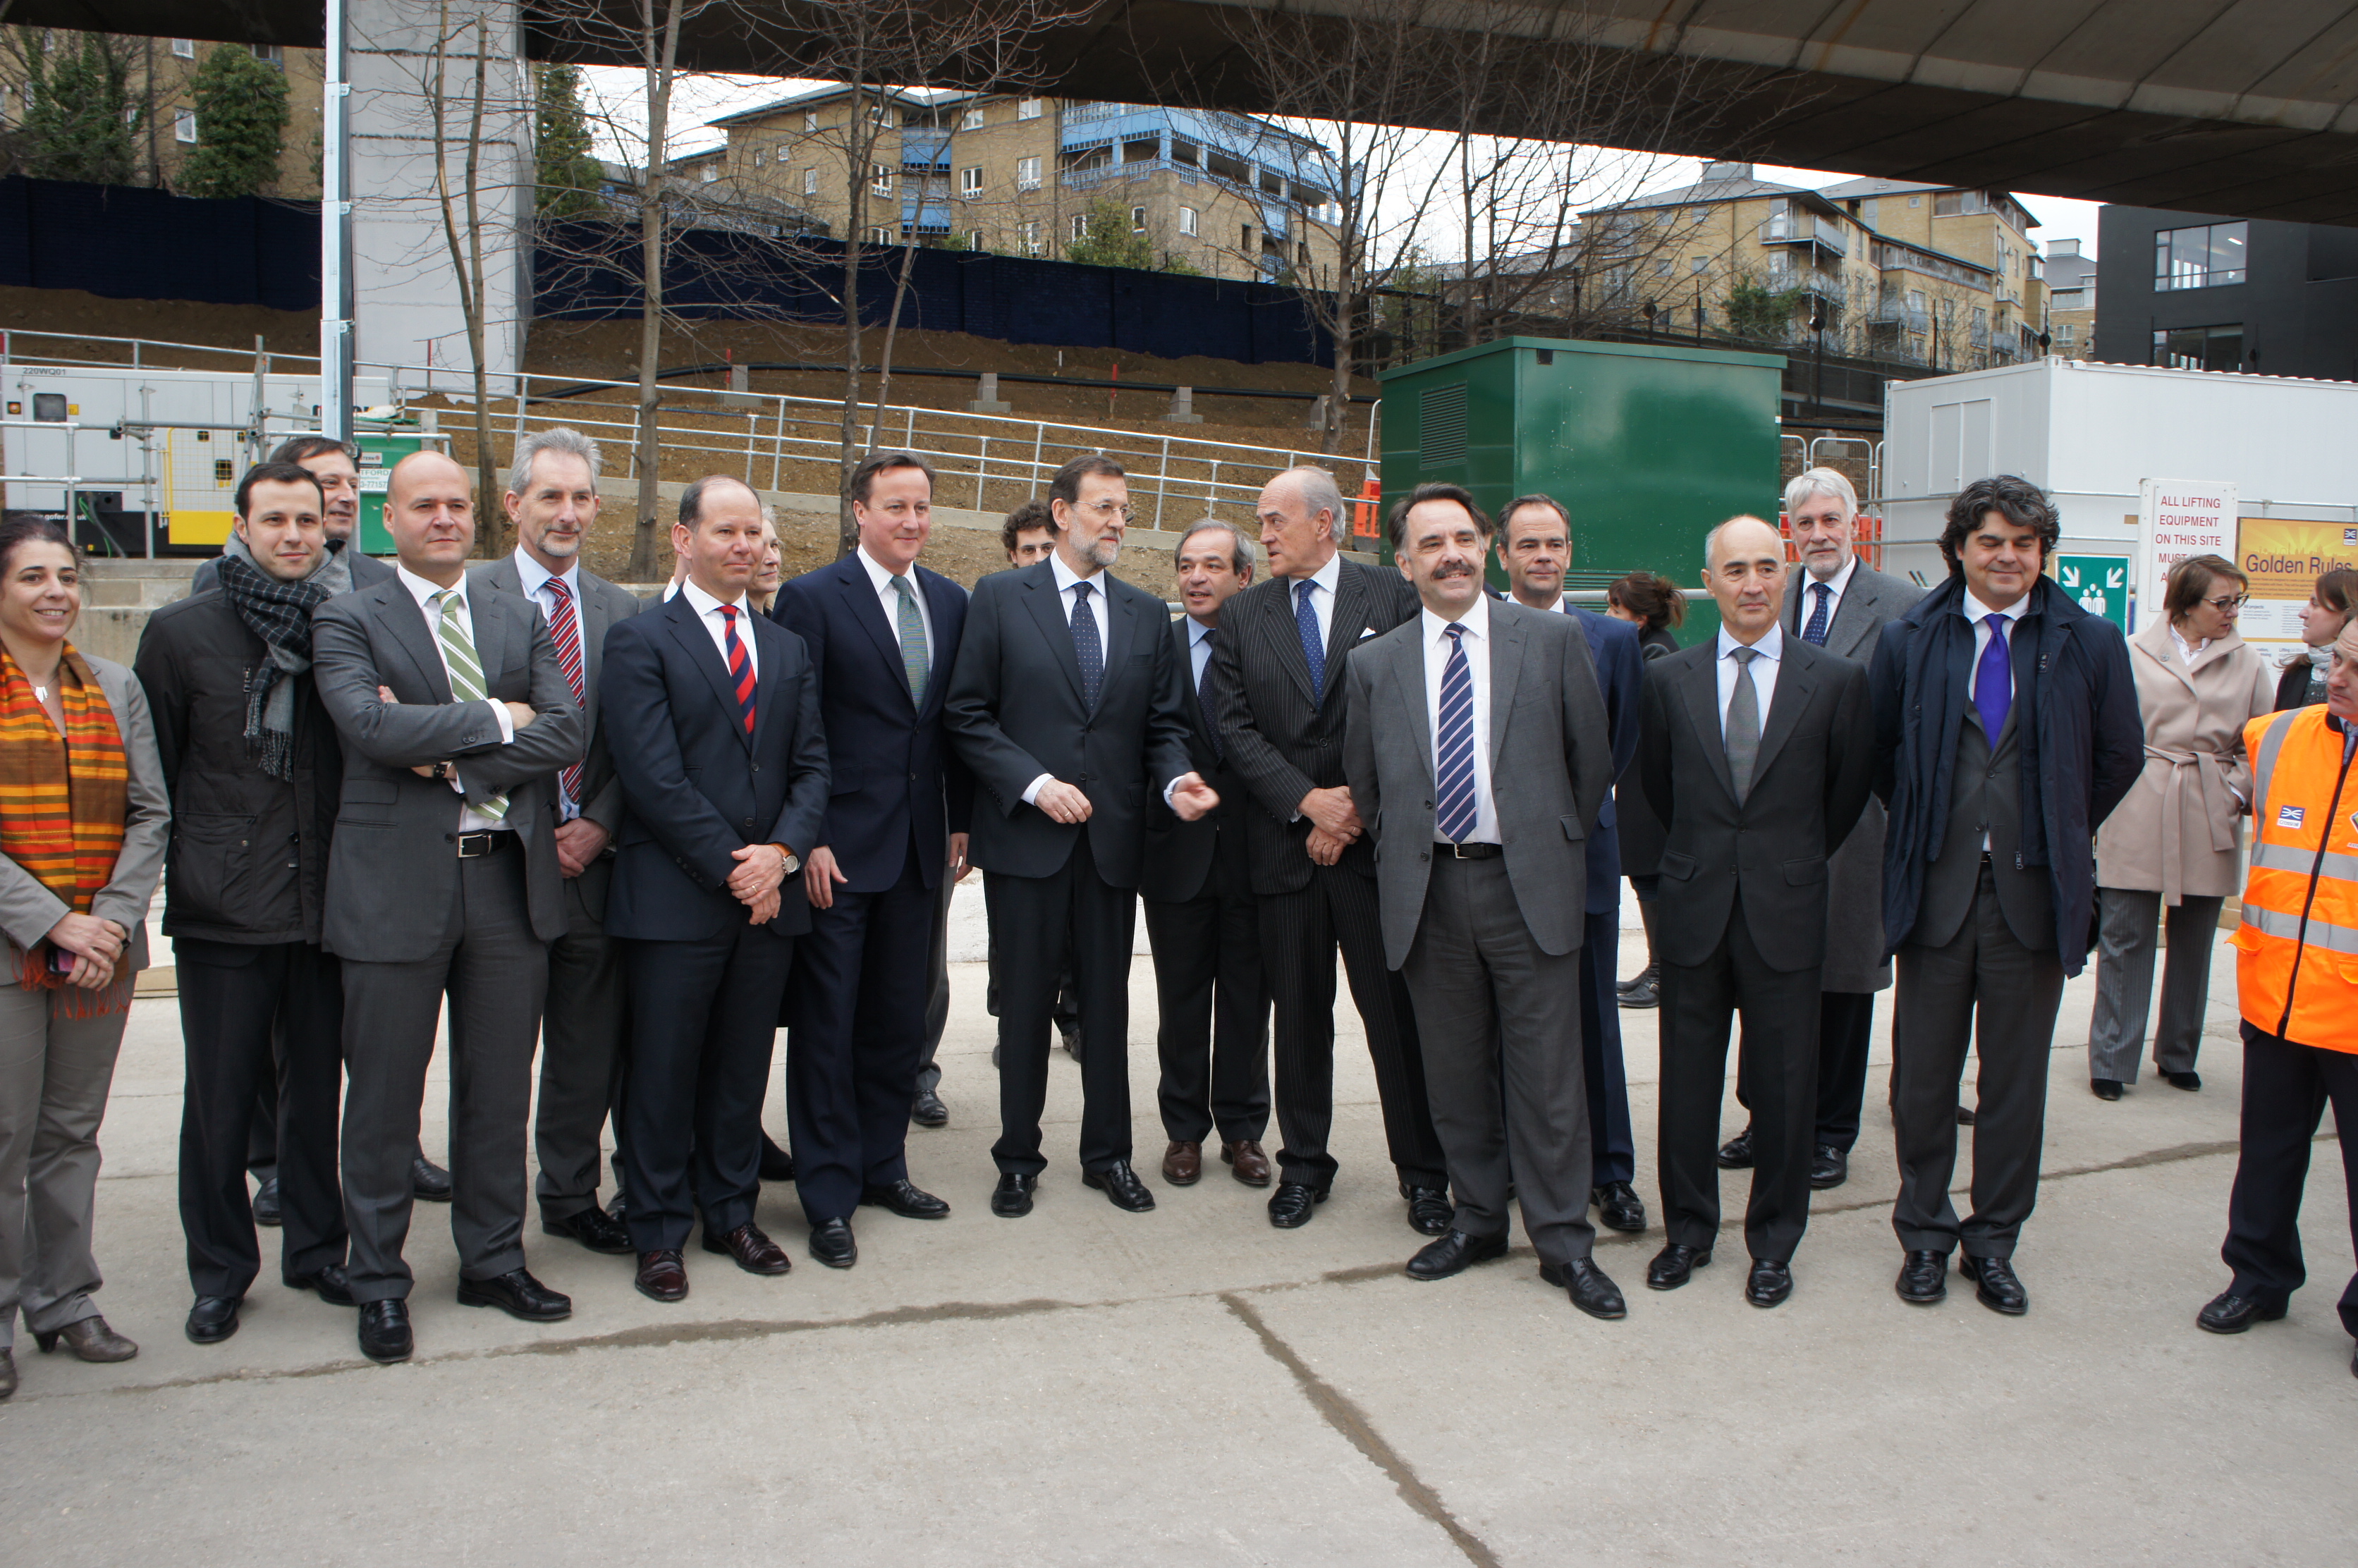 El presidente del gobierno visita el Crossrail en Londres en el que trabaja FCC